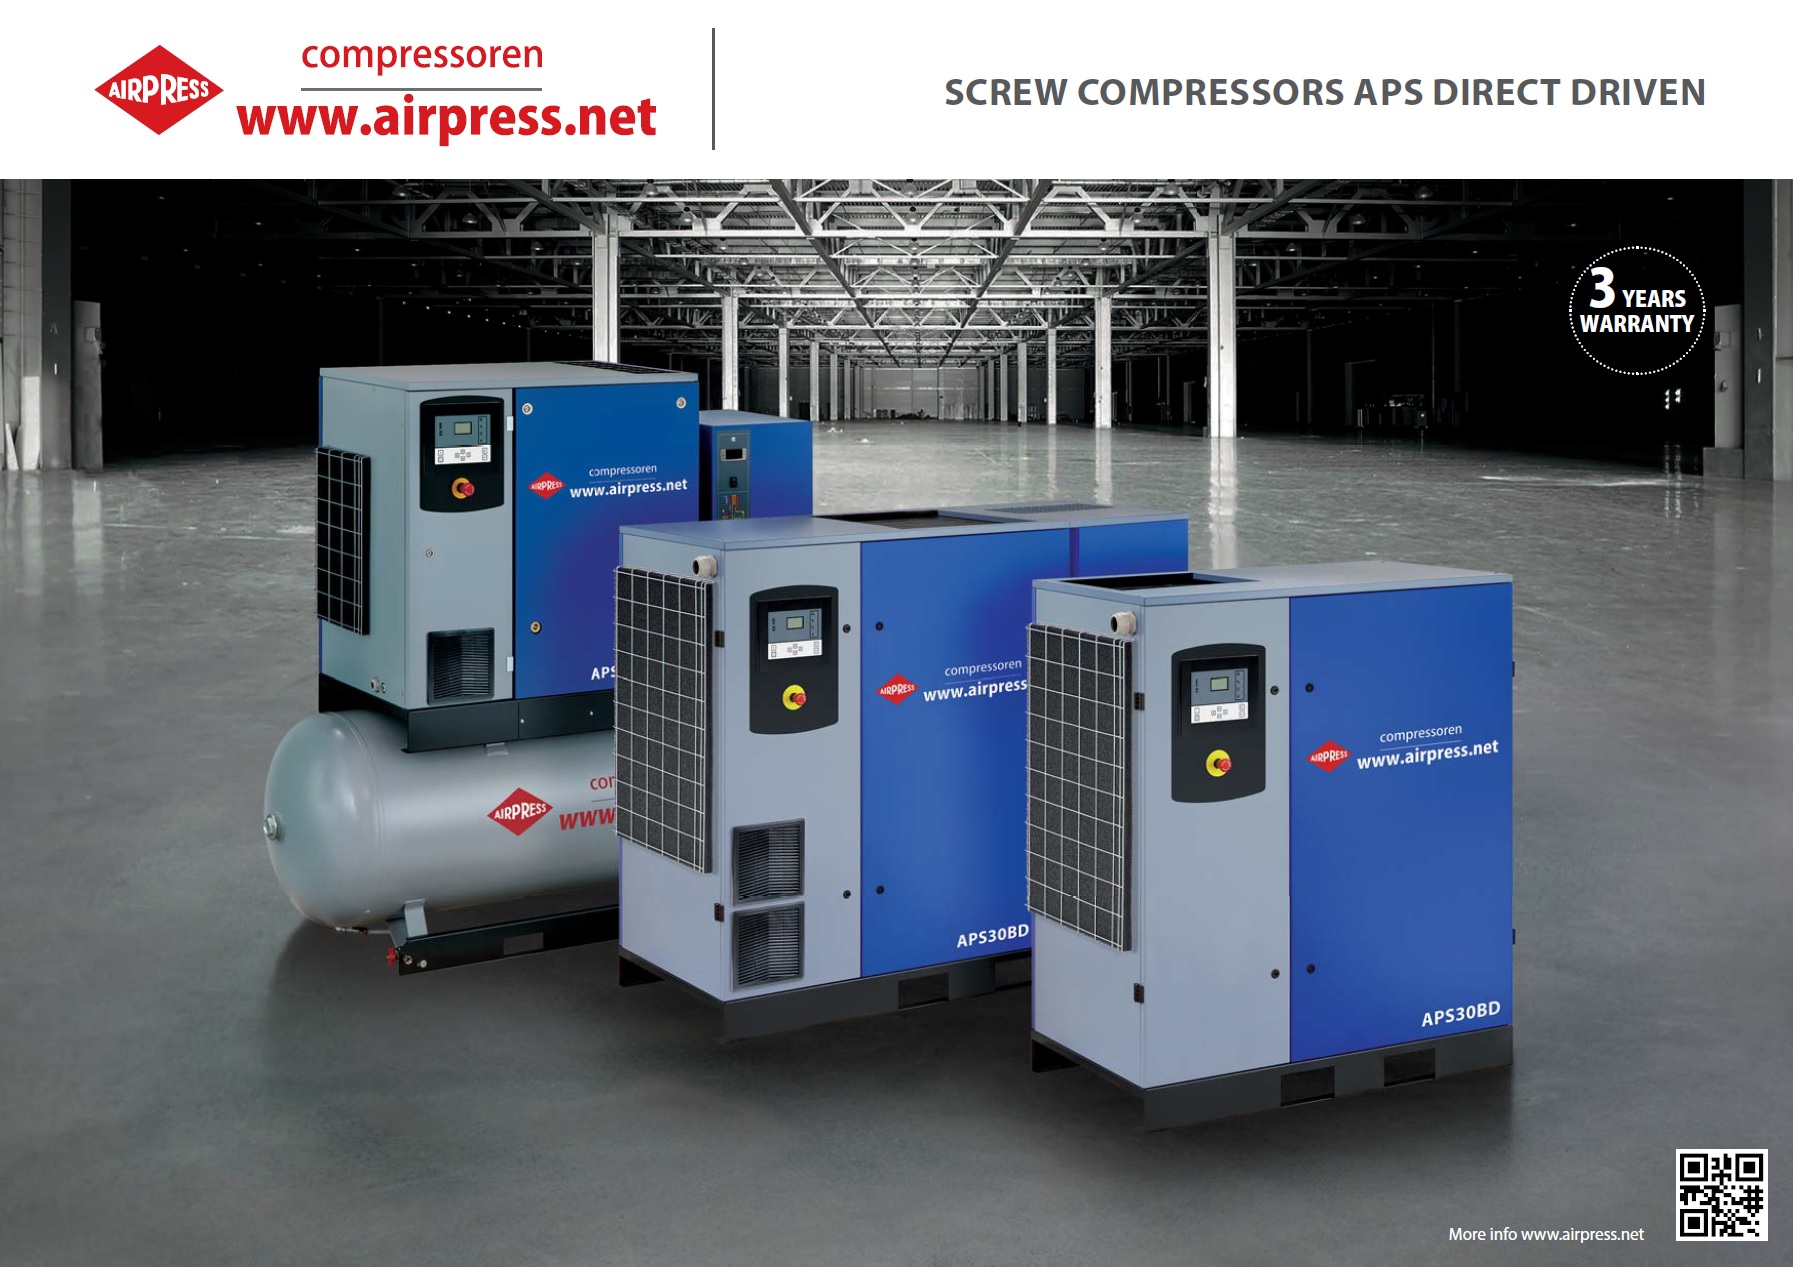 Screwcompressors APS DIRECT DRIVEN